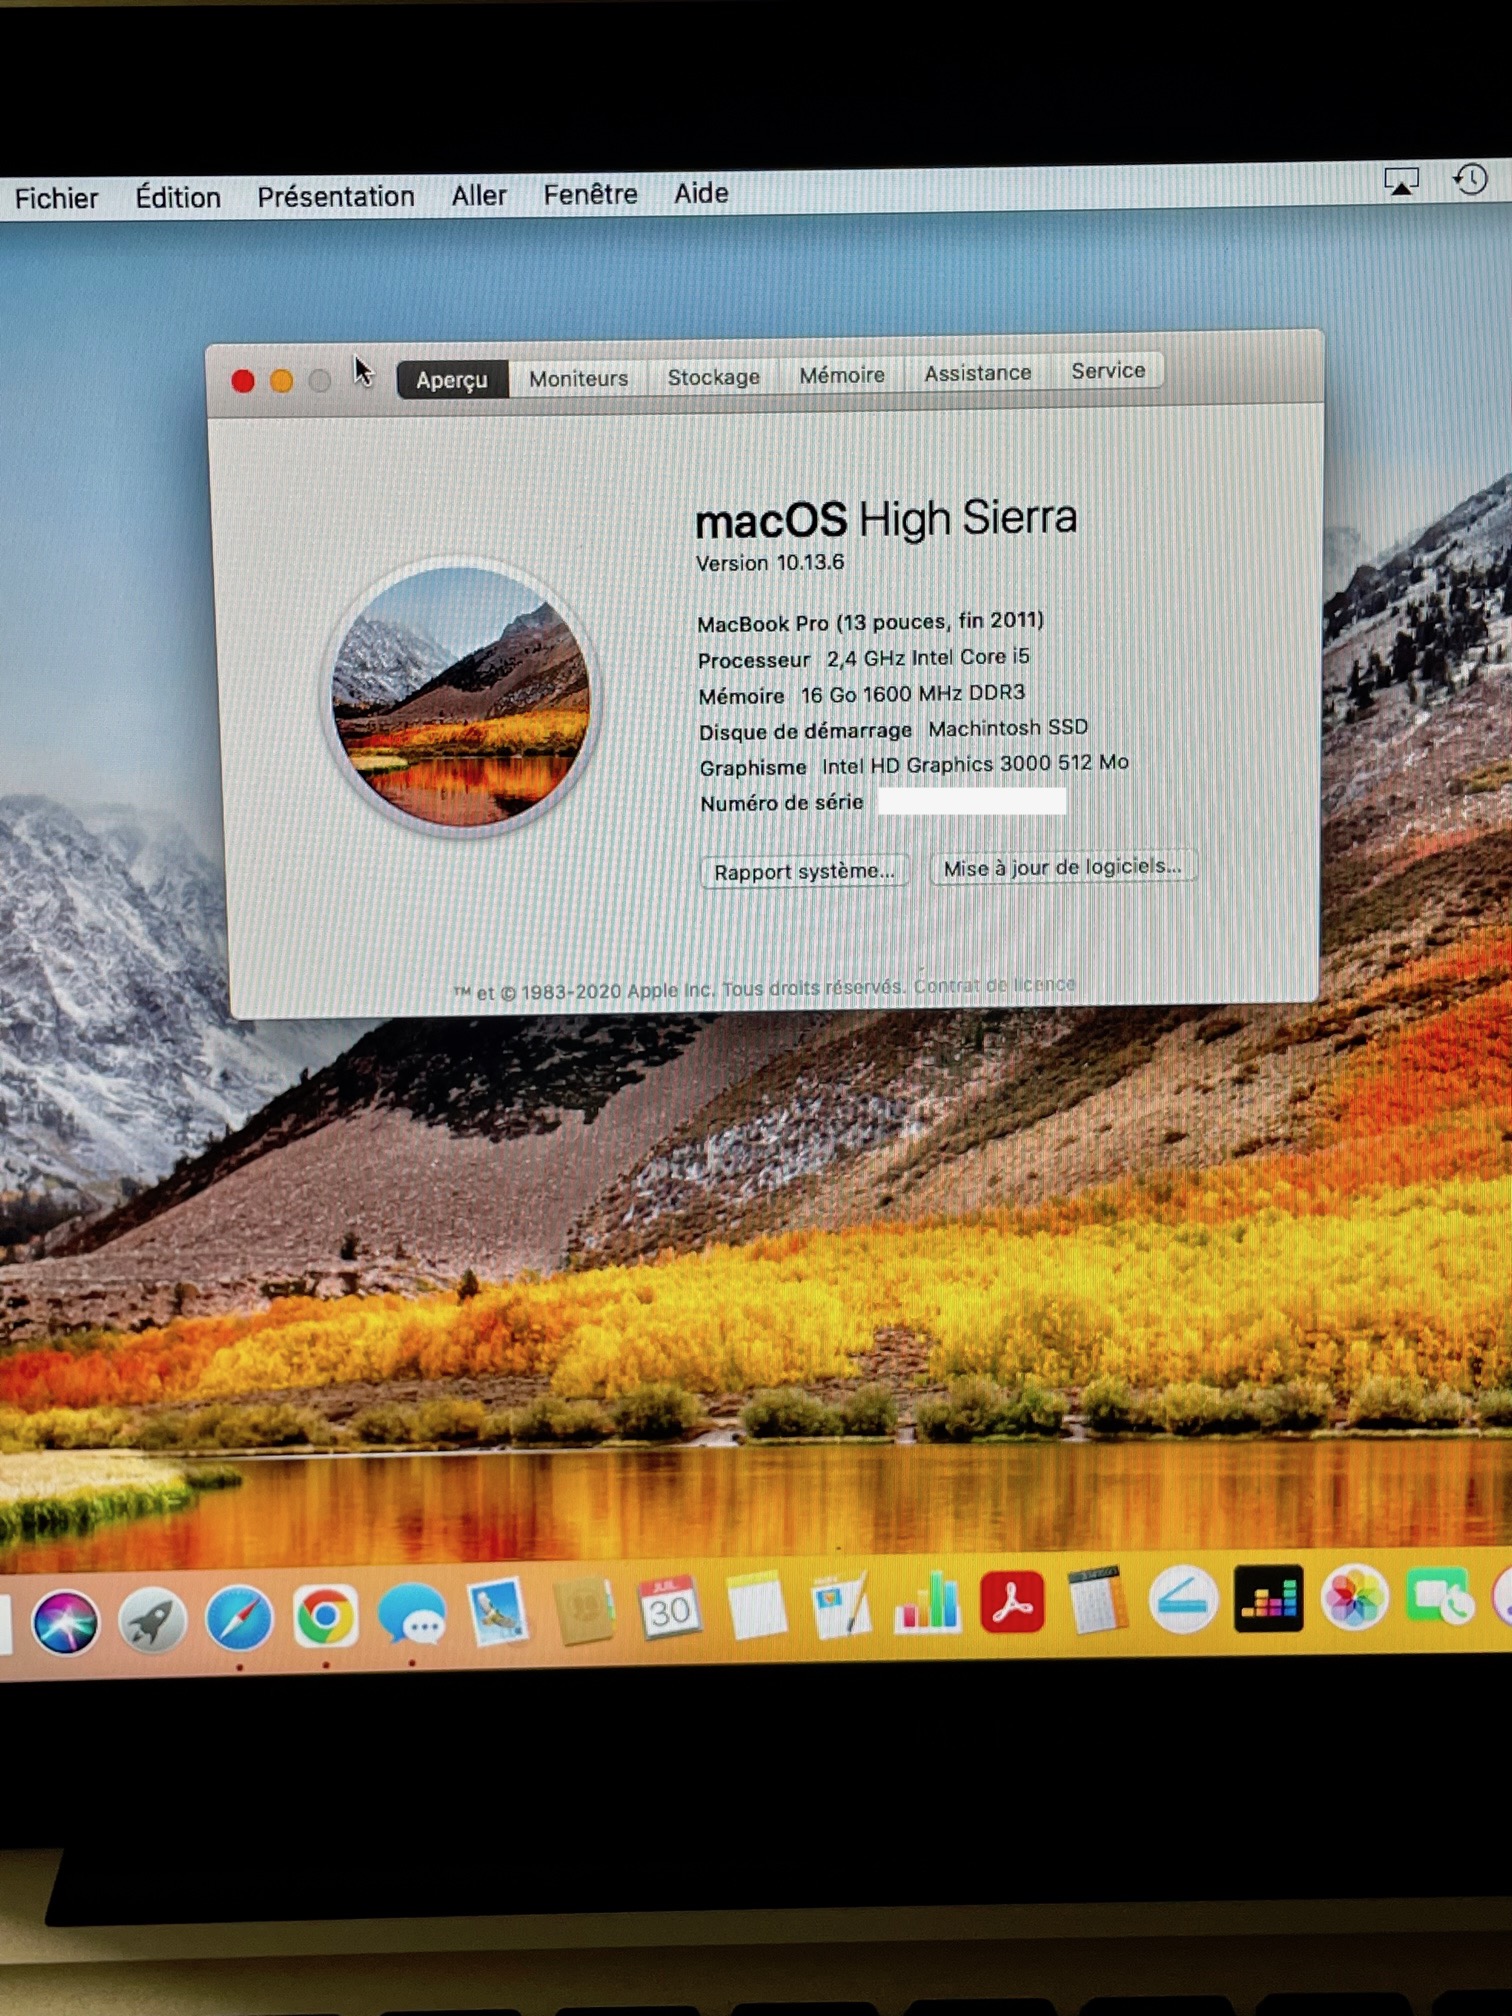 Macbook Pro 13 pouces fin 2011 16 Go de RAM // 2 D